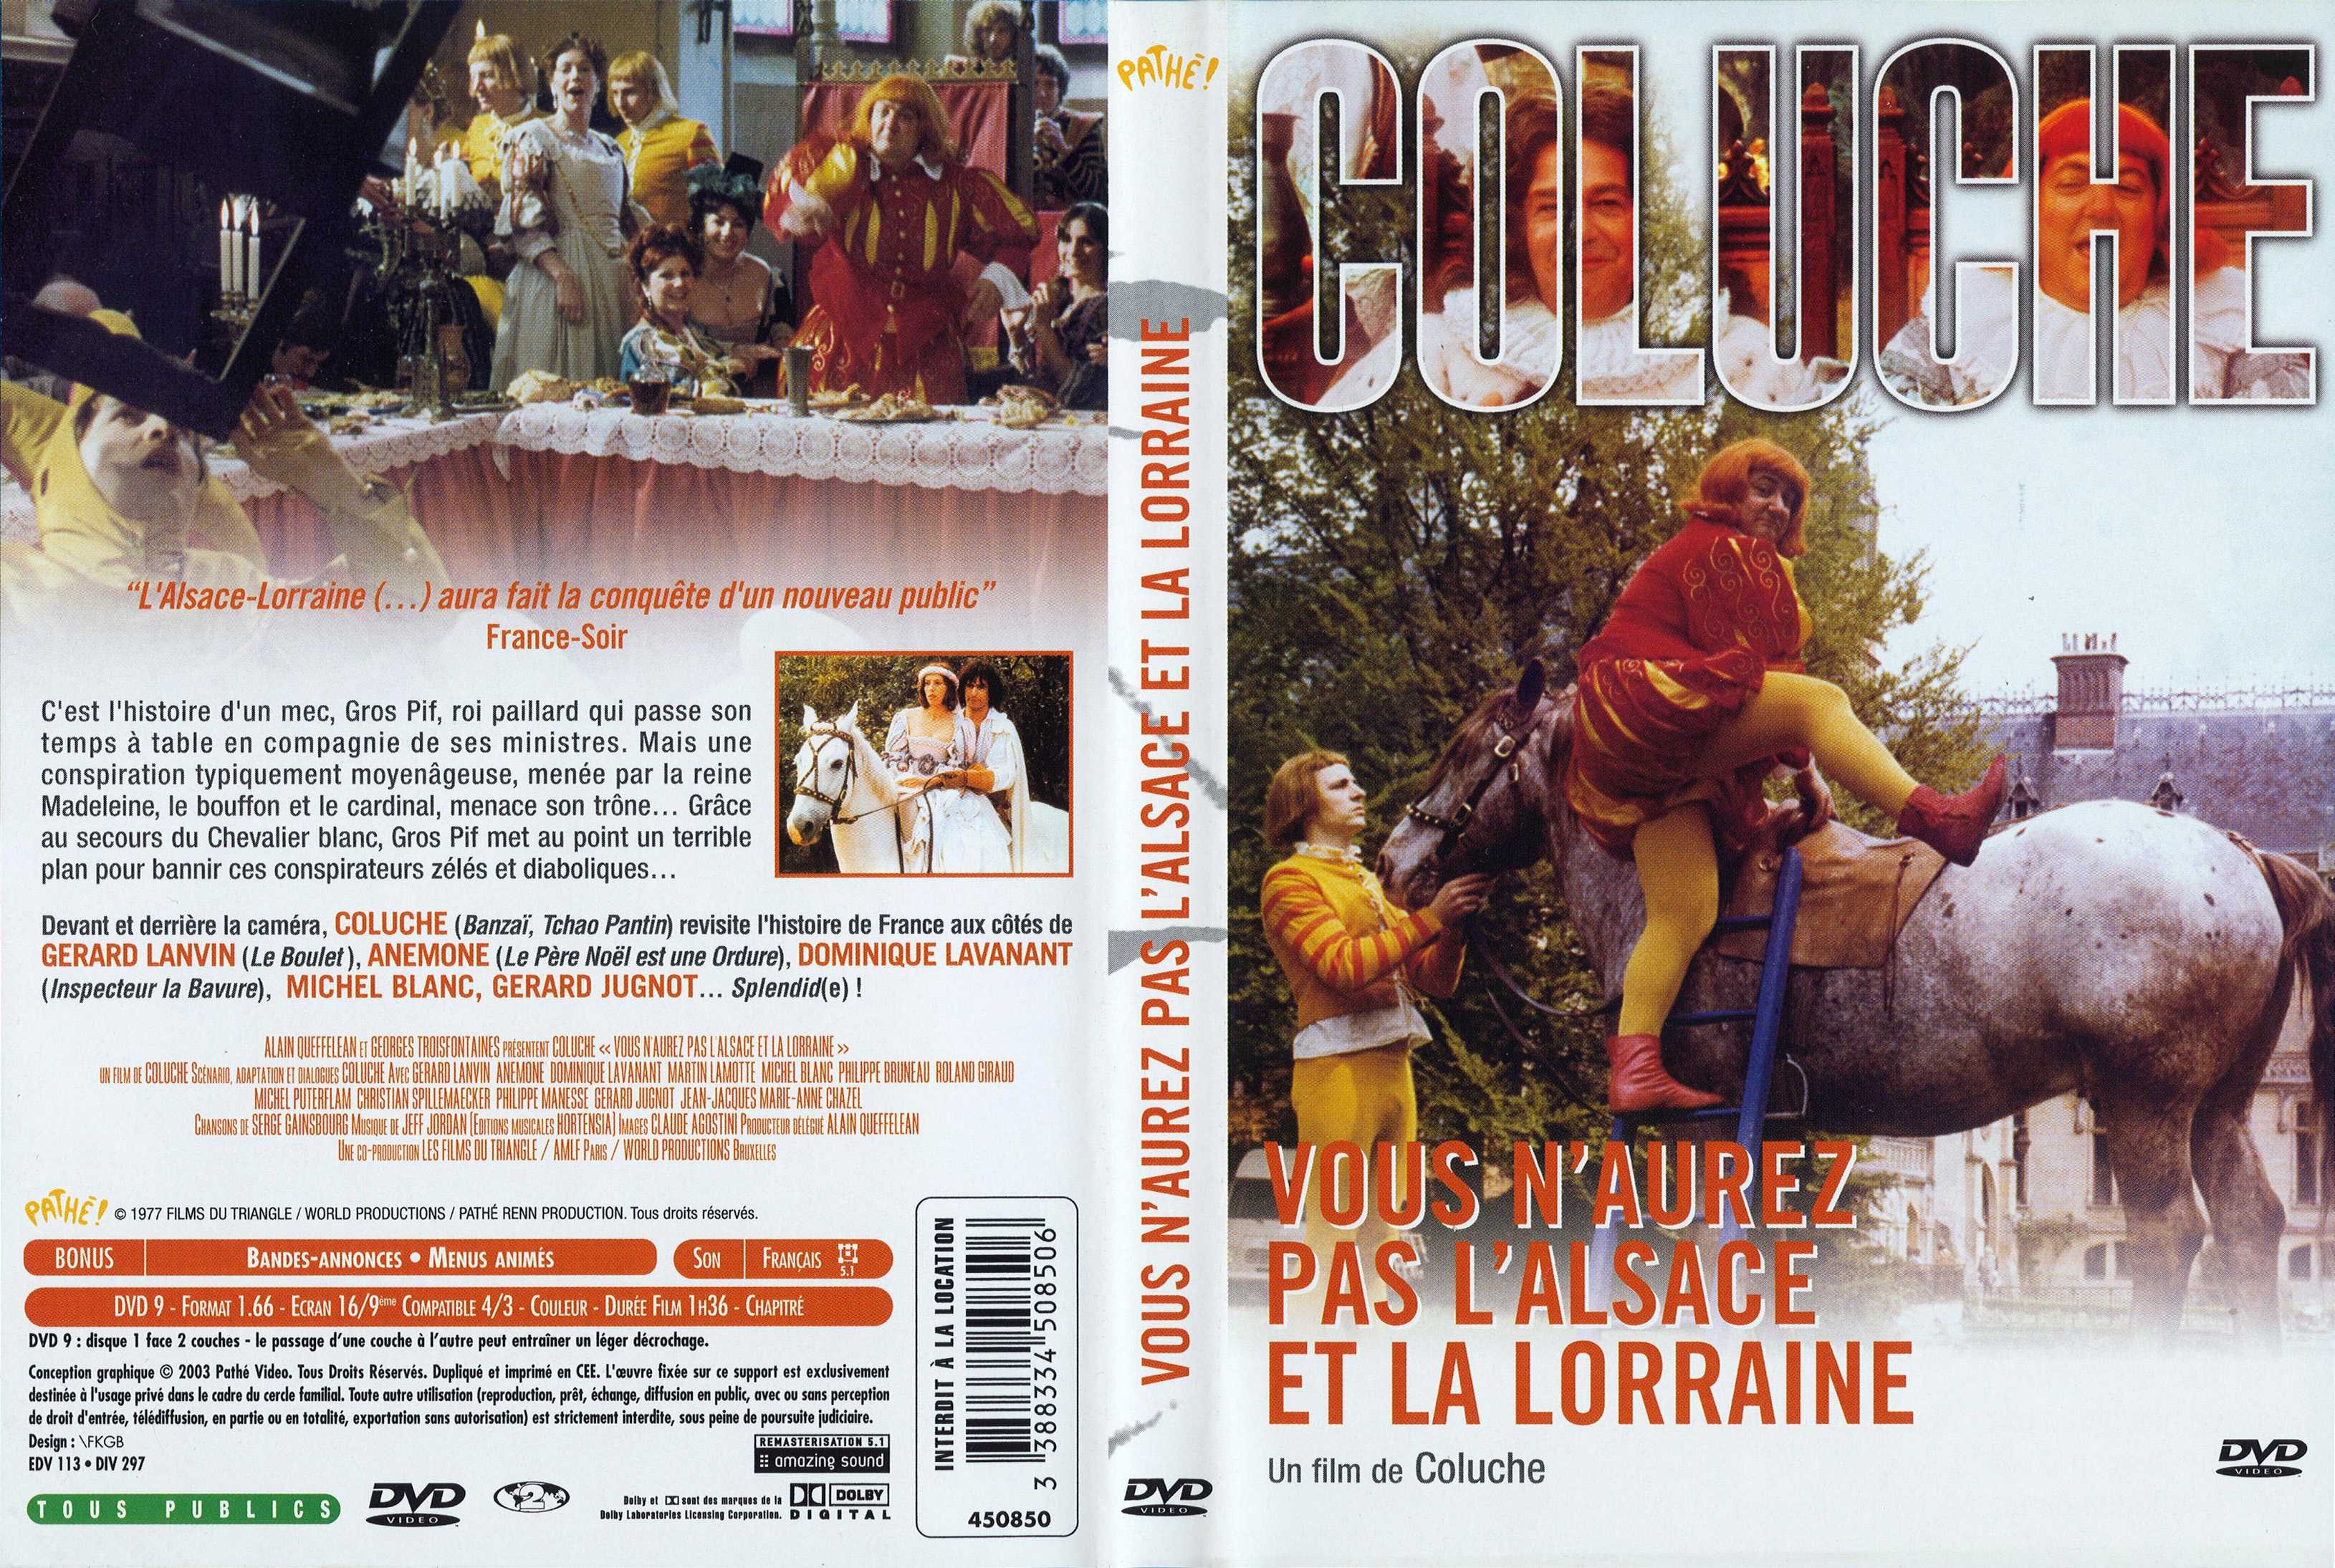 Jaquette DVD de Vous n'aurez pas l'Alsace et la Lorraine - Cinéma Passion